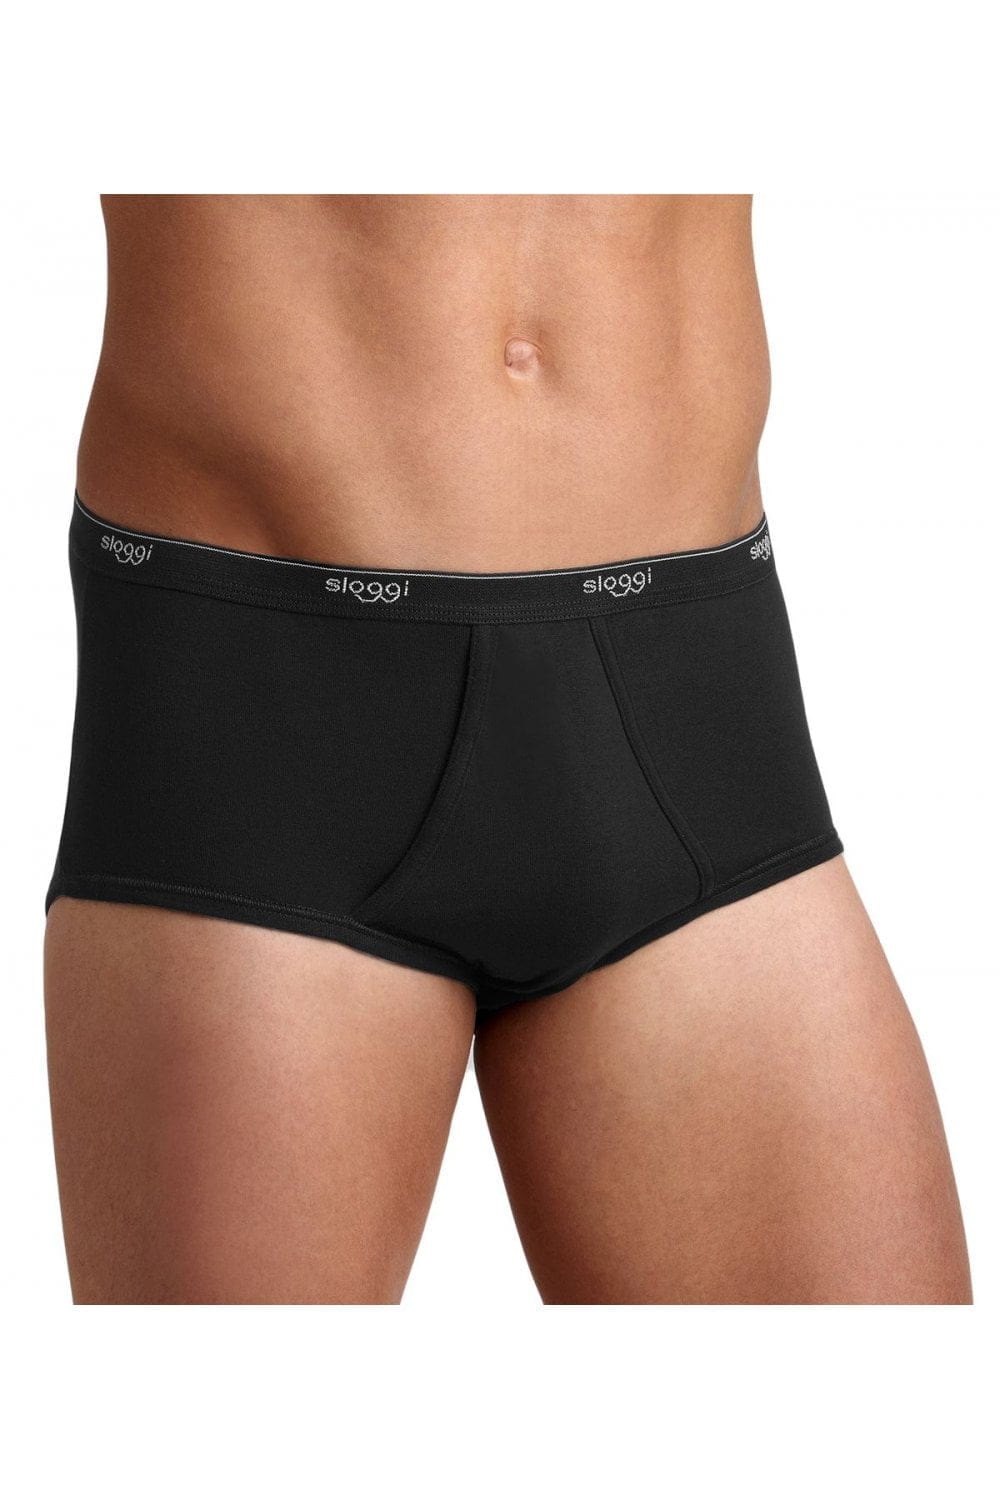 Men's Maxi Briefs Underwear